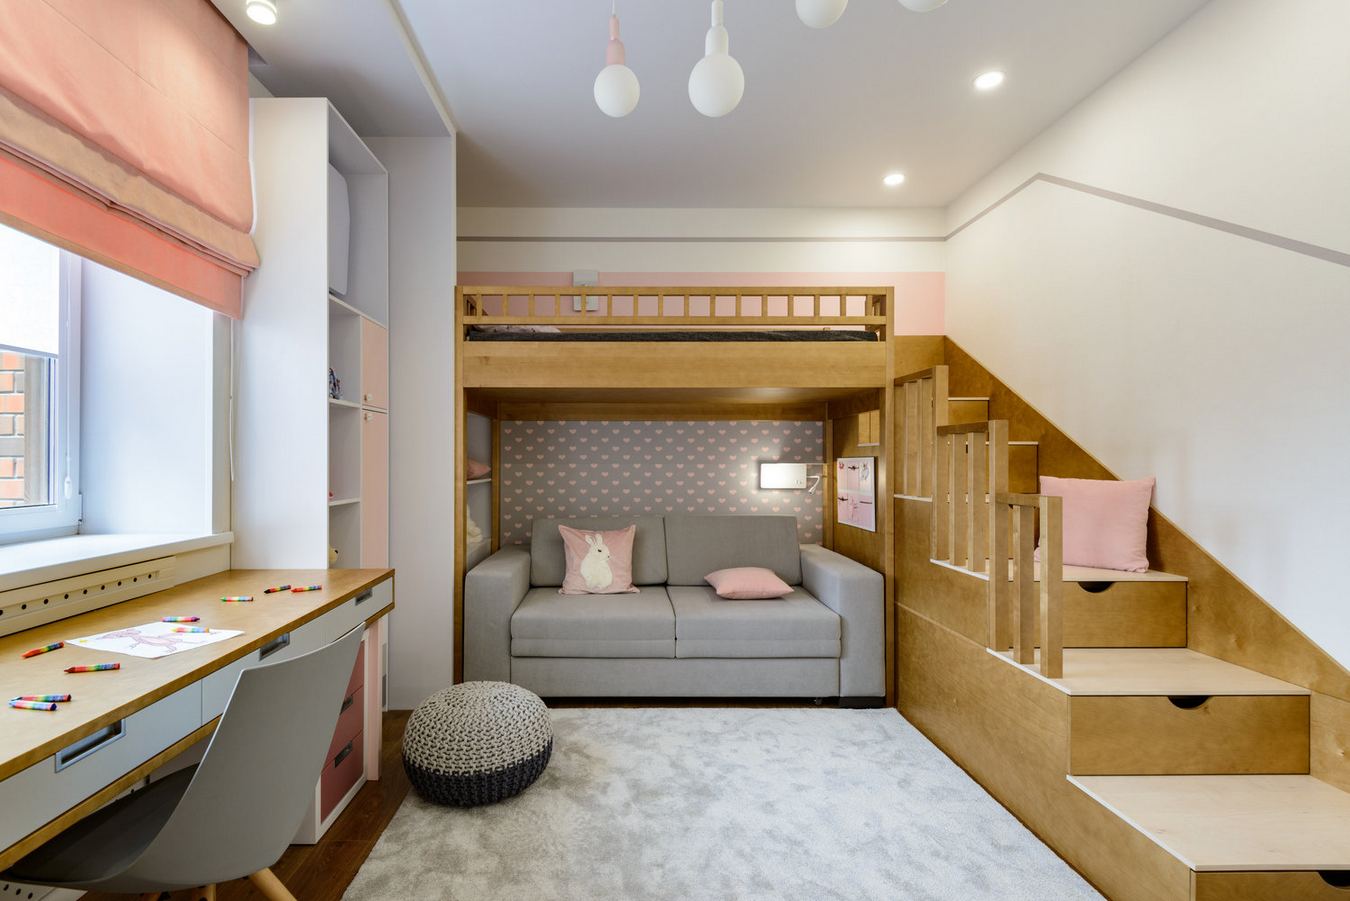 Családi otthon kényelmes minimál lakberendezéssel, 94m2-es, stílusos és funkcionális élettér háromszobás lakásban